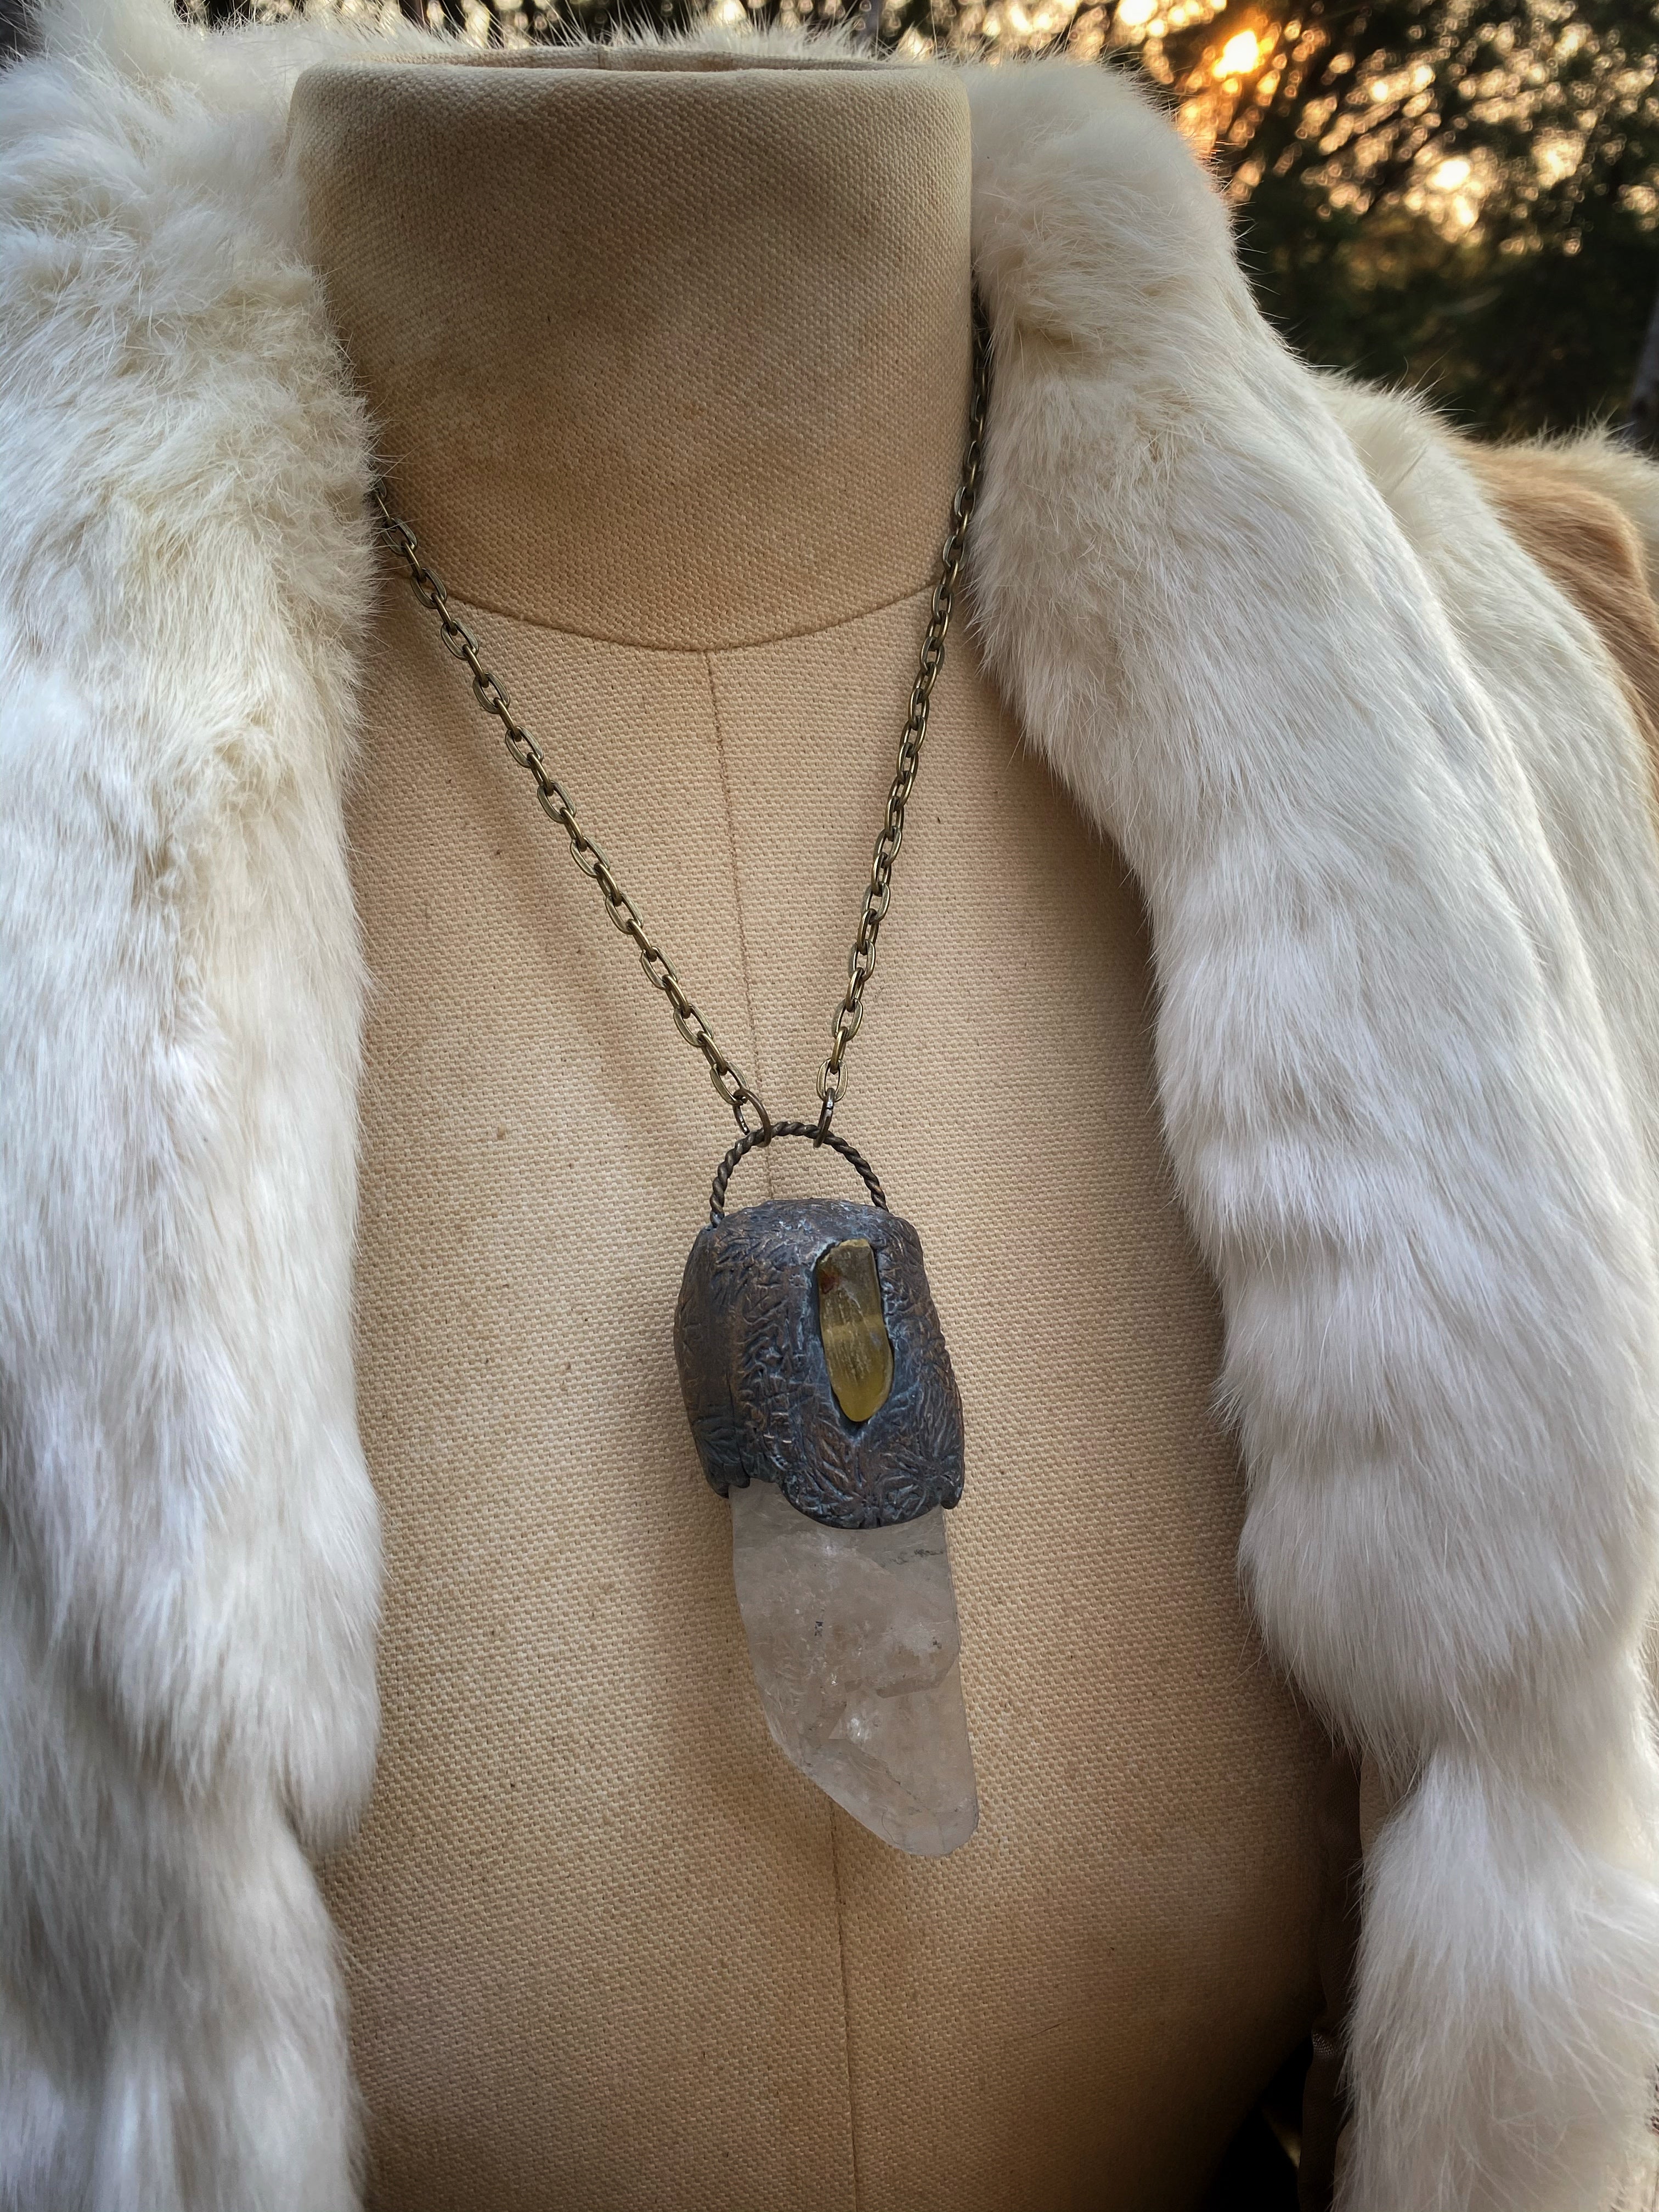 Huge Quartz Crystal + Amber Necklace